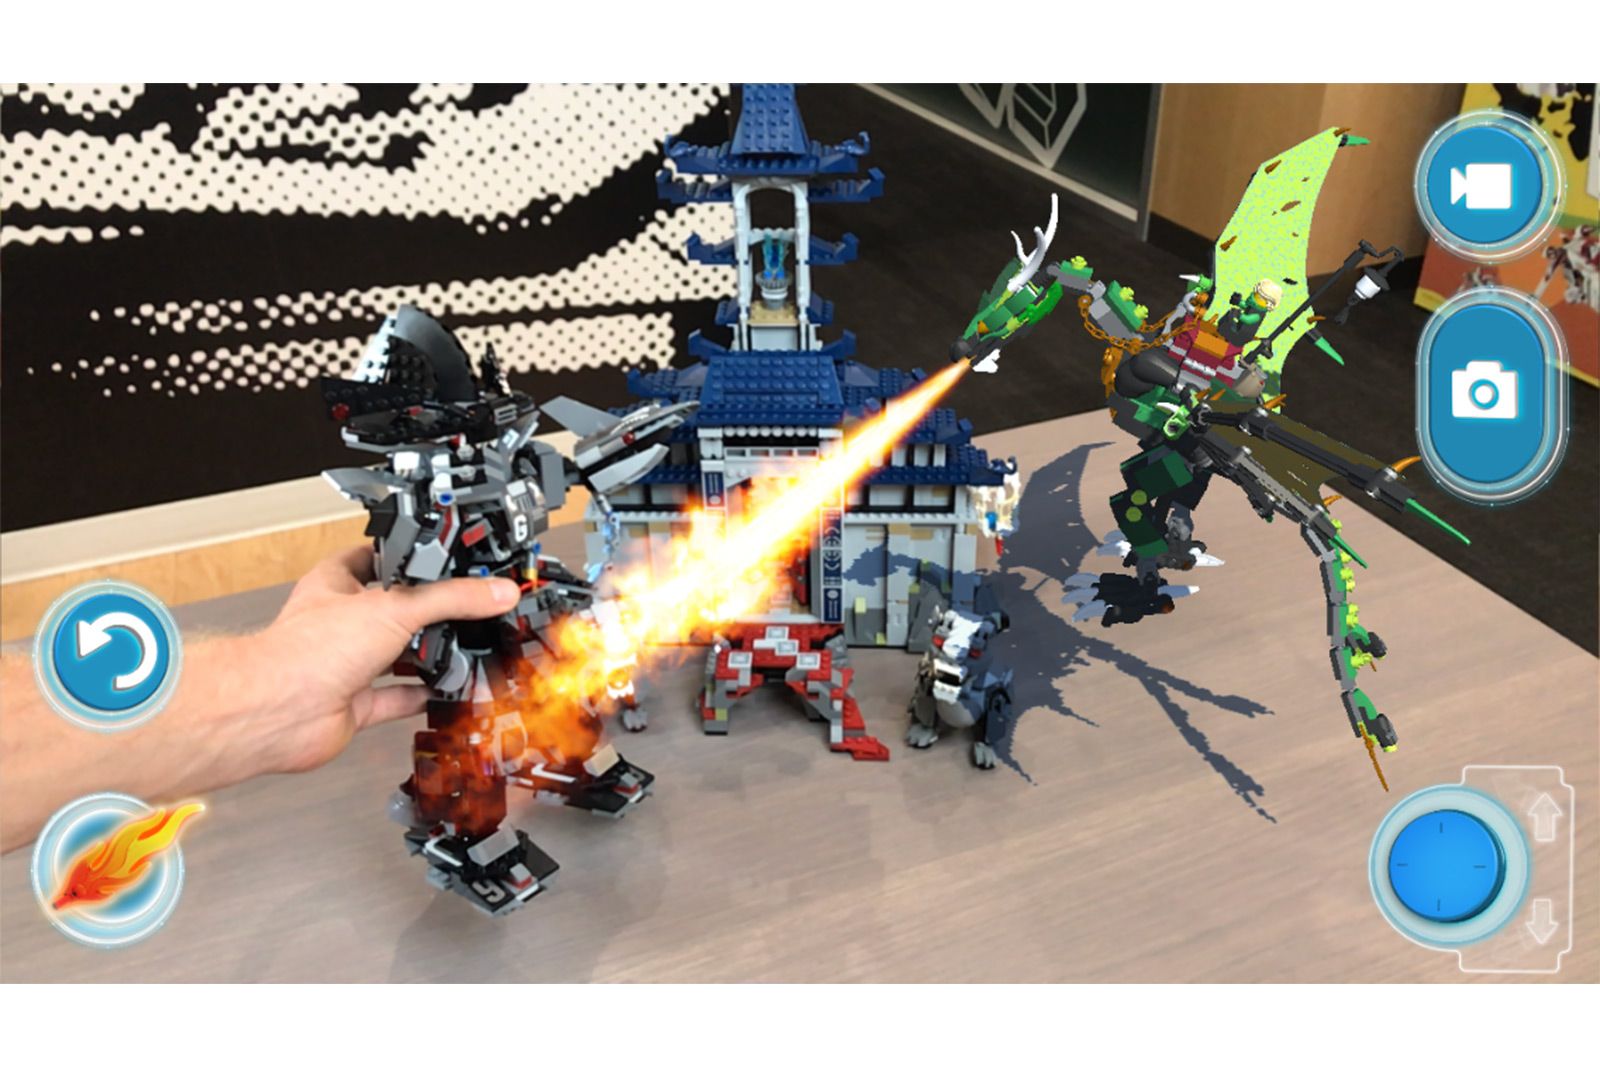 Lego AR-Studio brings Lego bricks to life in a digital world image 1